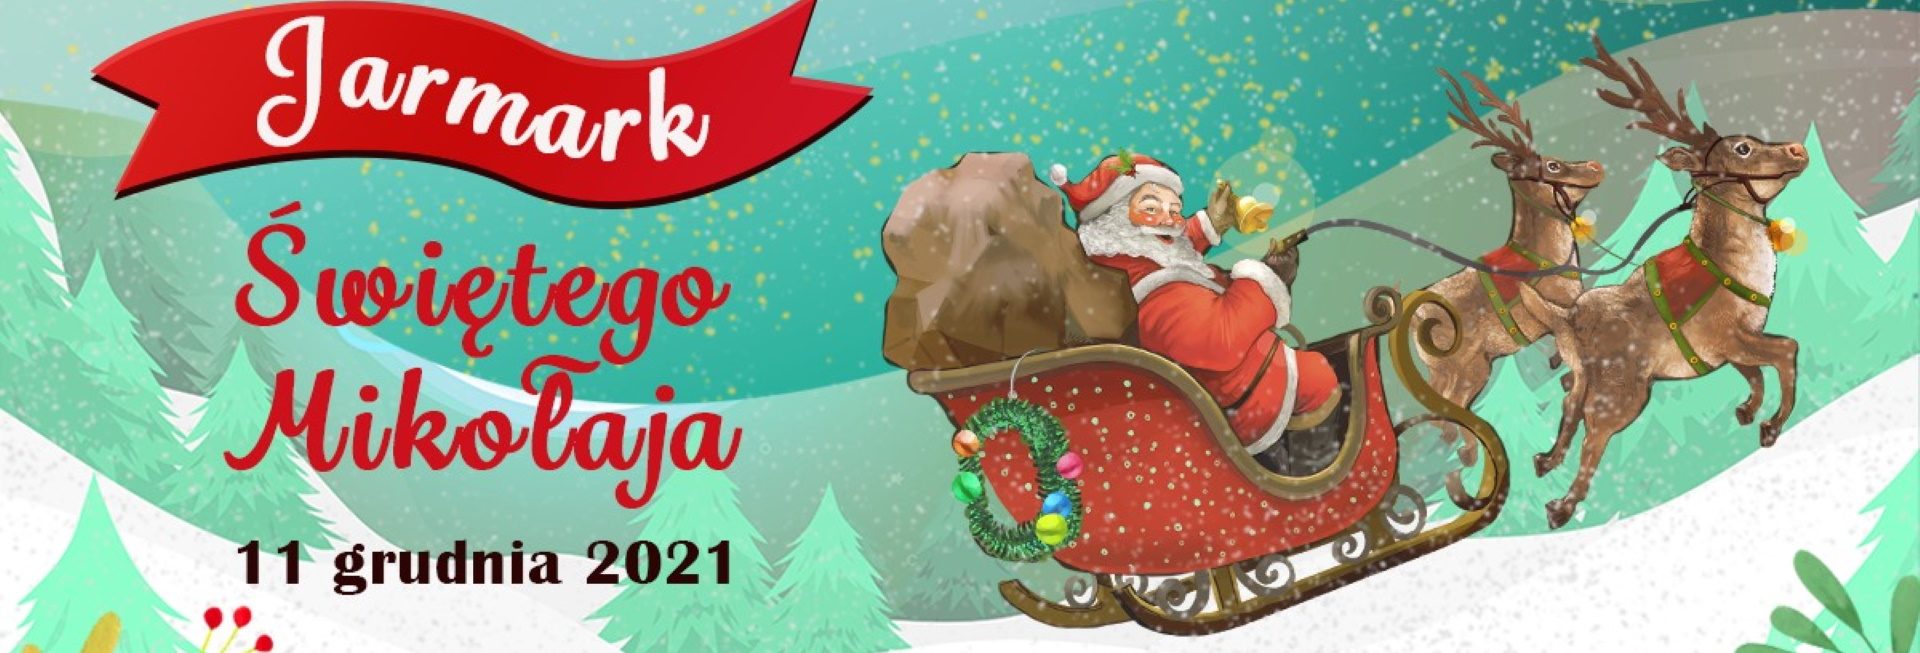 Plakat graficzny zapraszający na cykliczną imprezę Jarmark św. Mikołaja - Mrągowo 2021.